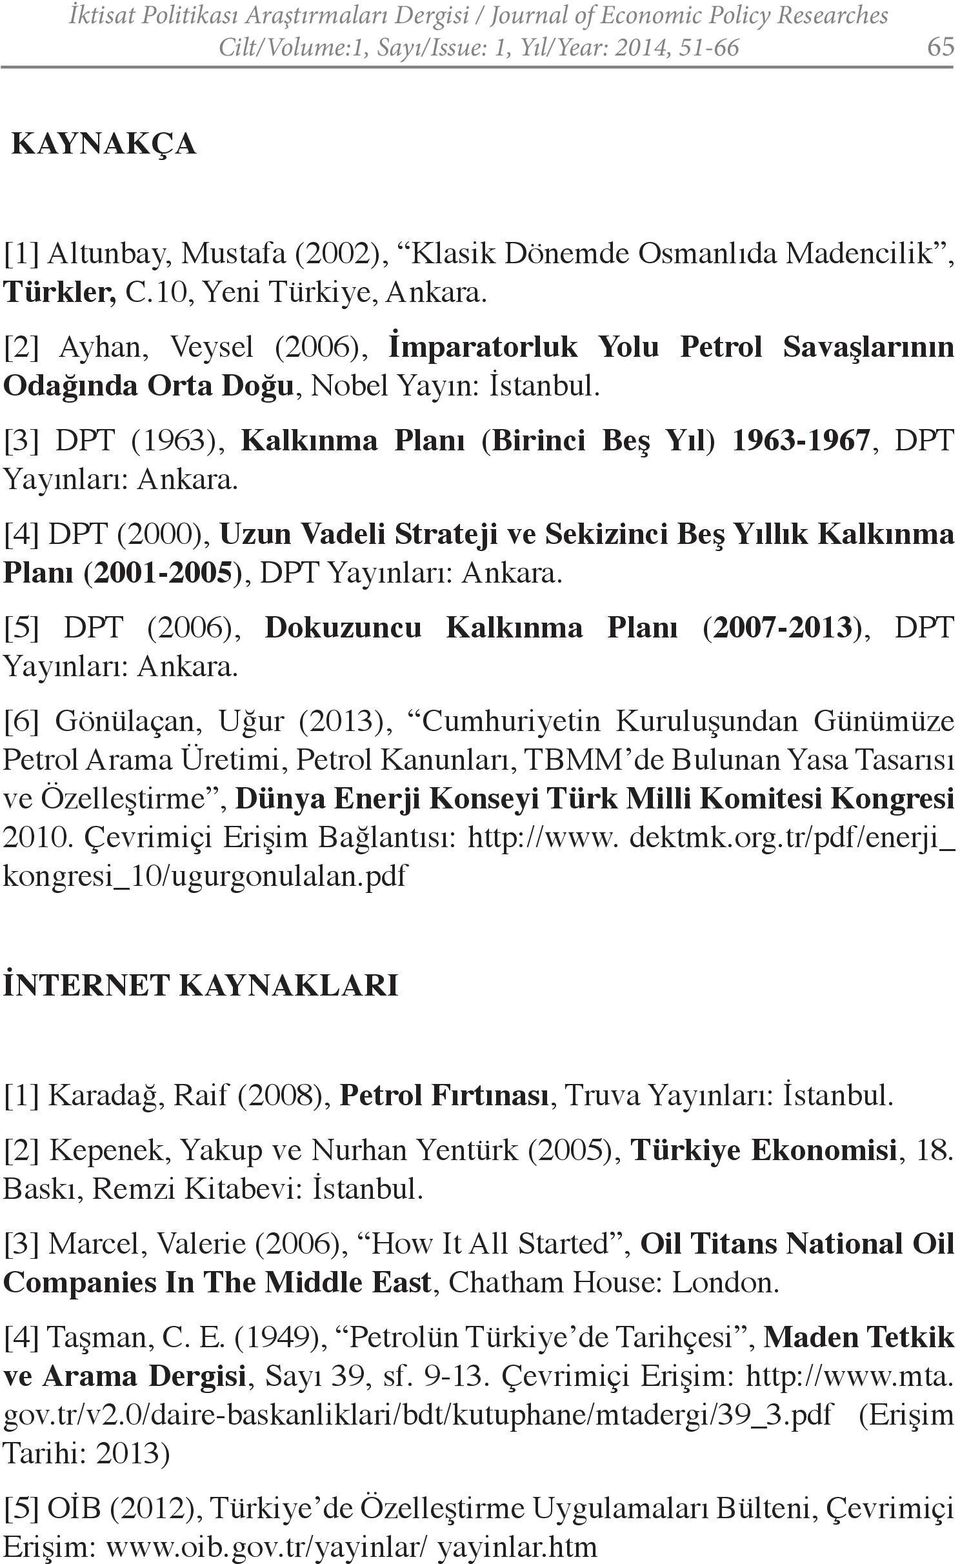 [3] DPT (1963), Kalkınma Planı (Birinci Beş Yıl) 1963-1967, DPT Yayınları: Ankara. [4] DPT (2000), Uzun Vadeli Strateji ve Sekizinci Beş Yıllık Kalkınma Planı (2001-2005), DPT Yayınları: Ankara.